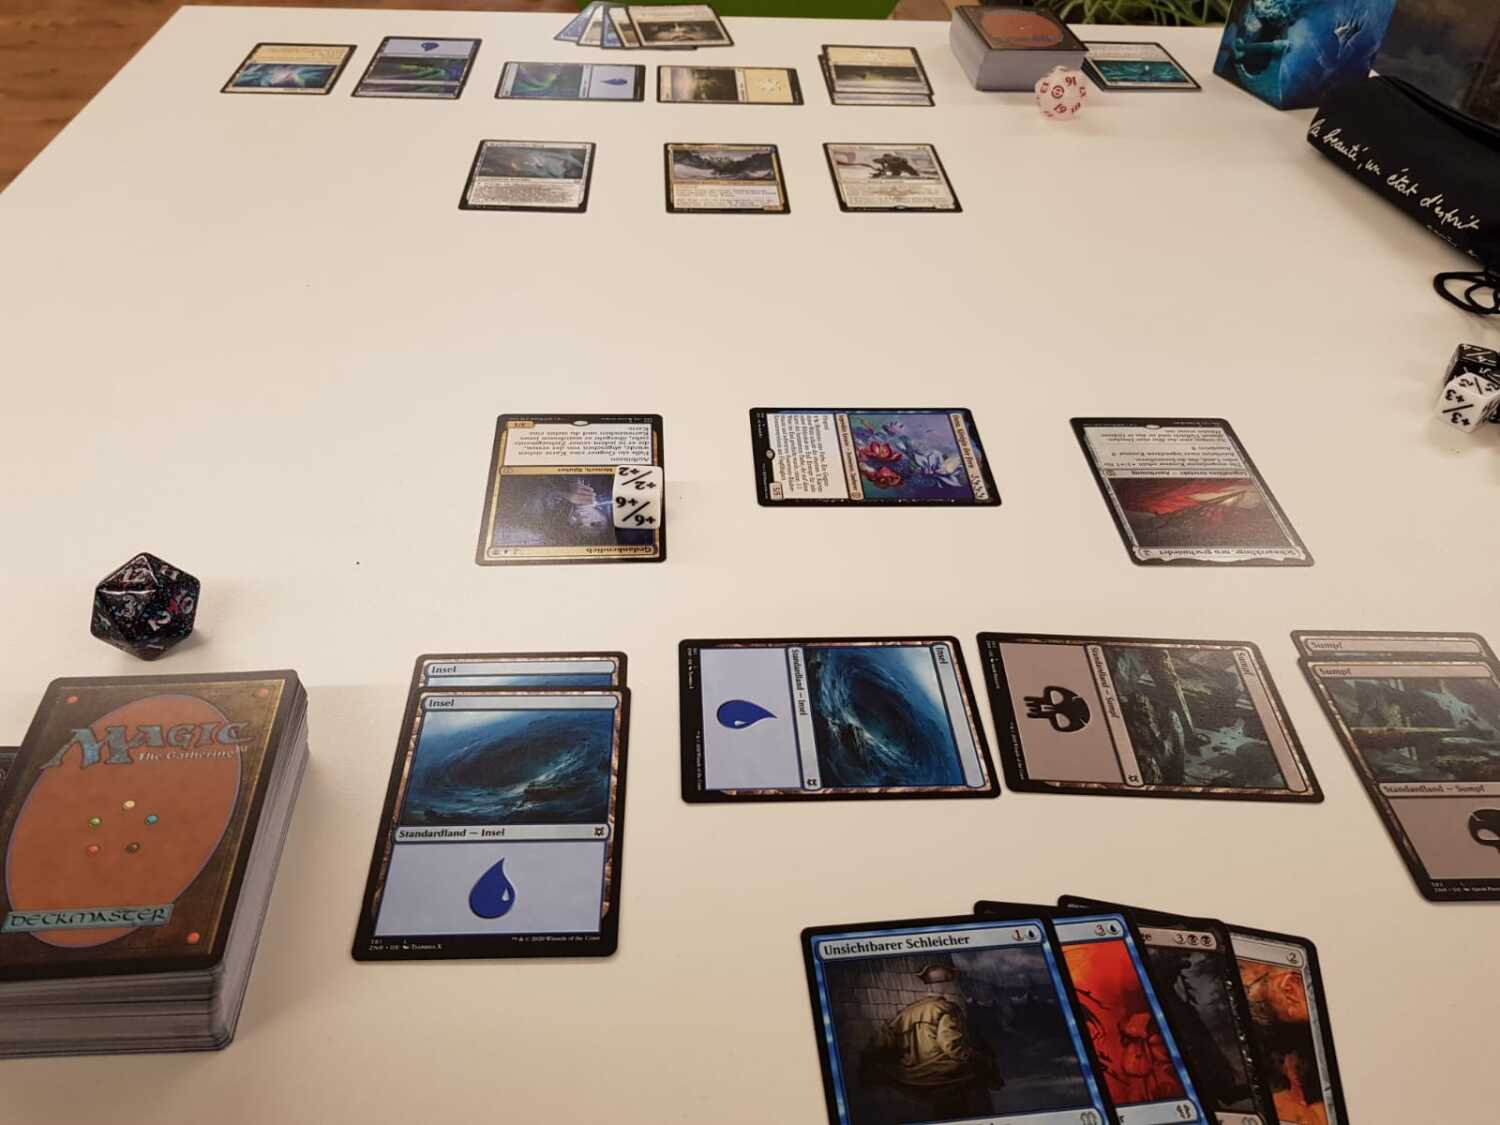 Sammelkartenspiel Magic: The Gathering liegt auf einem Tisch